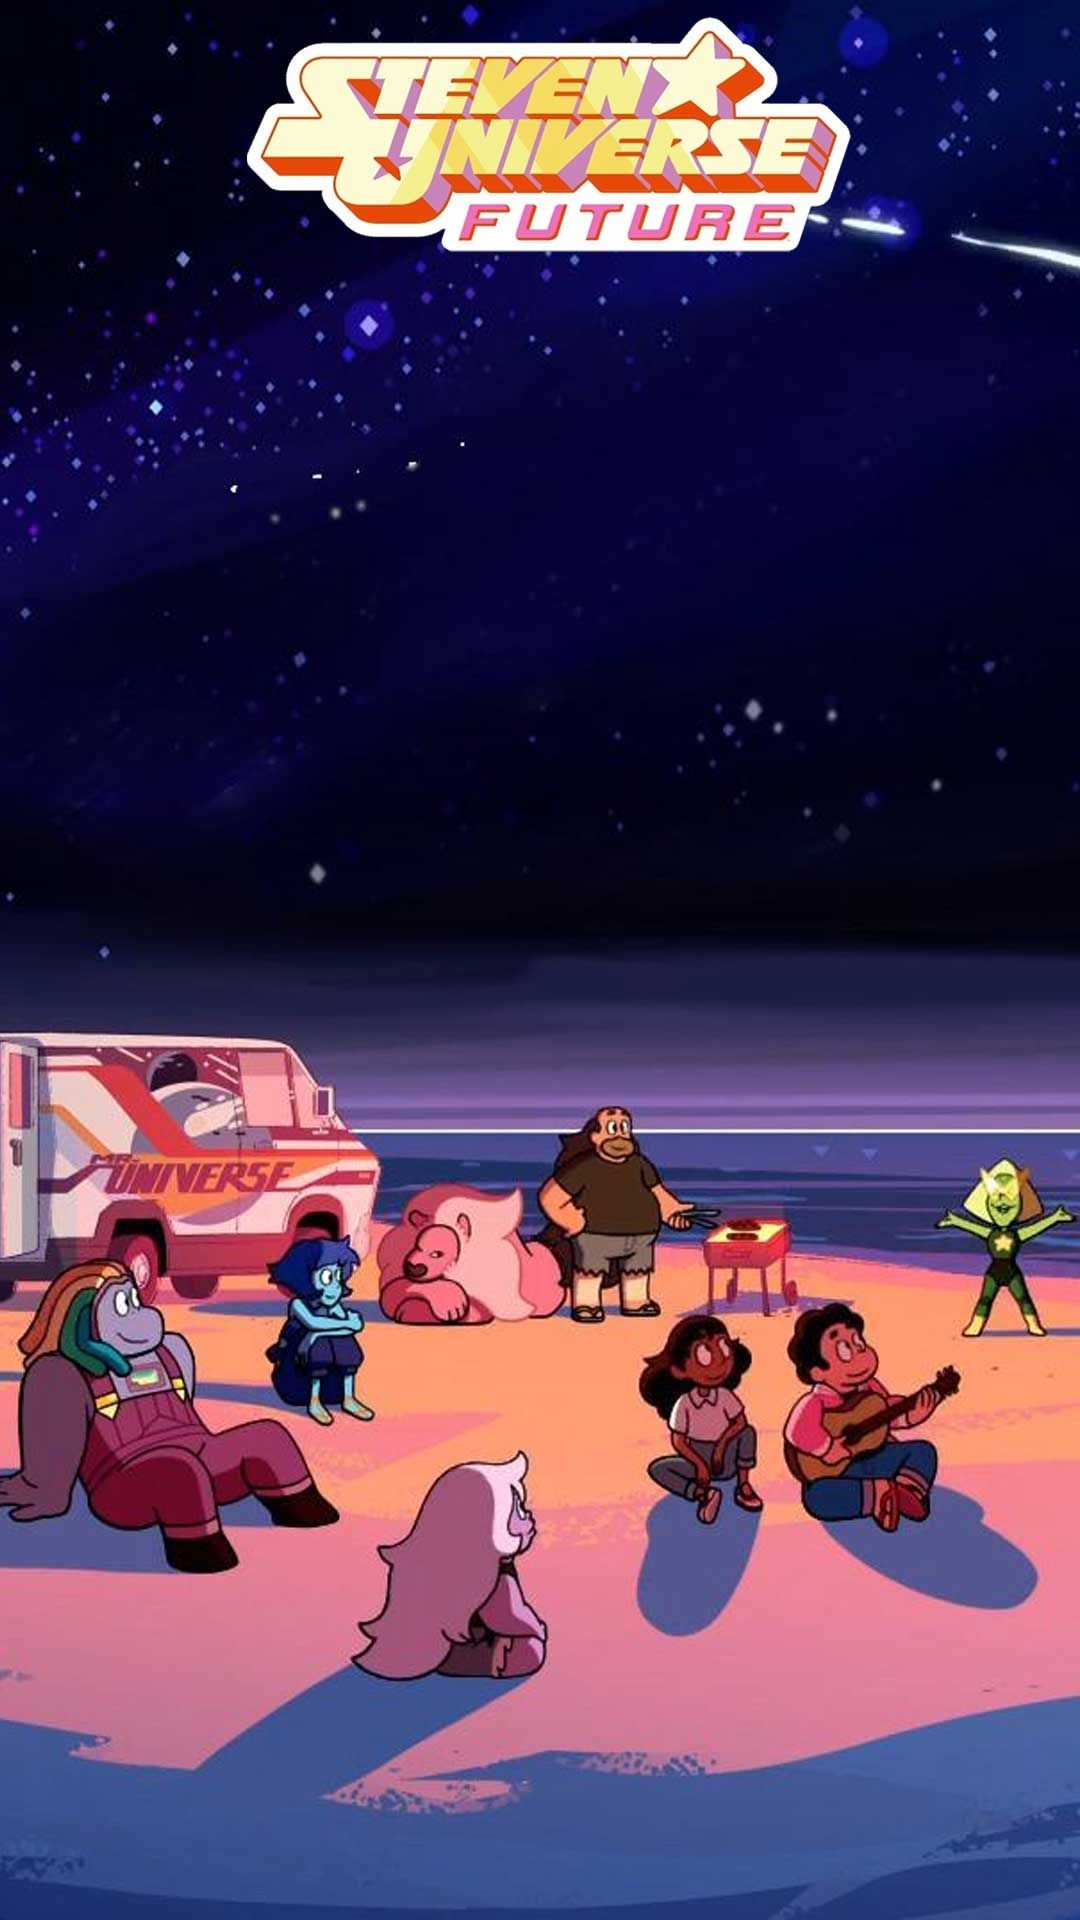 Steven Universe, Future wallpaper, Art screenshots, Steven Universe fanart, 1080x1920 Full HD Handy